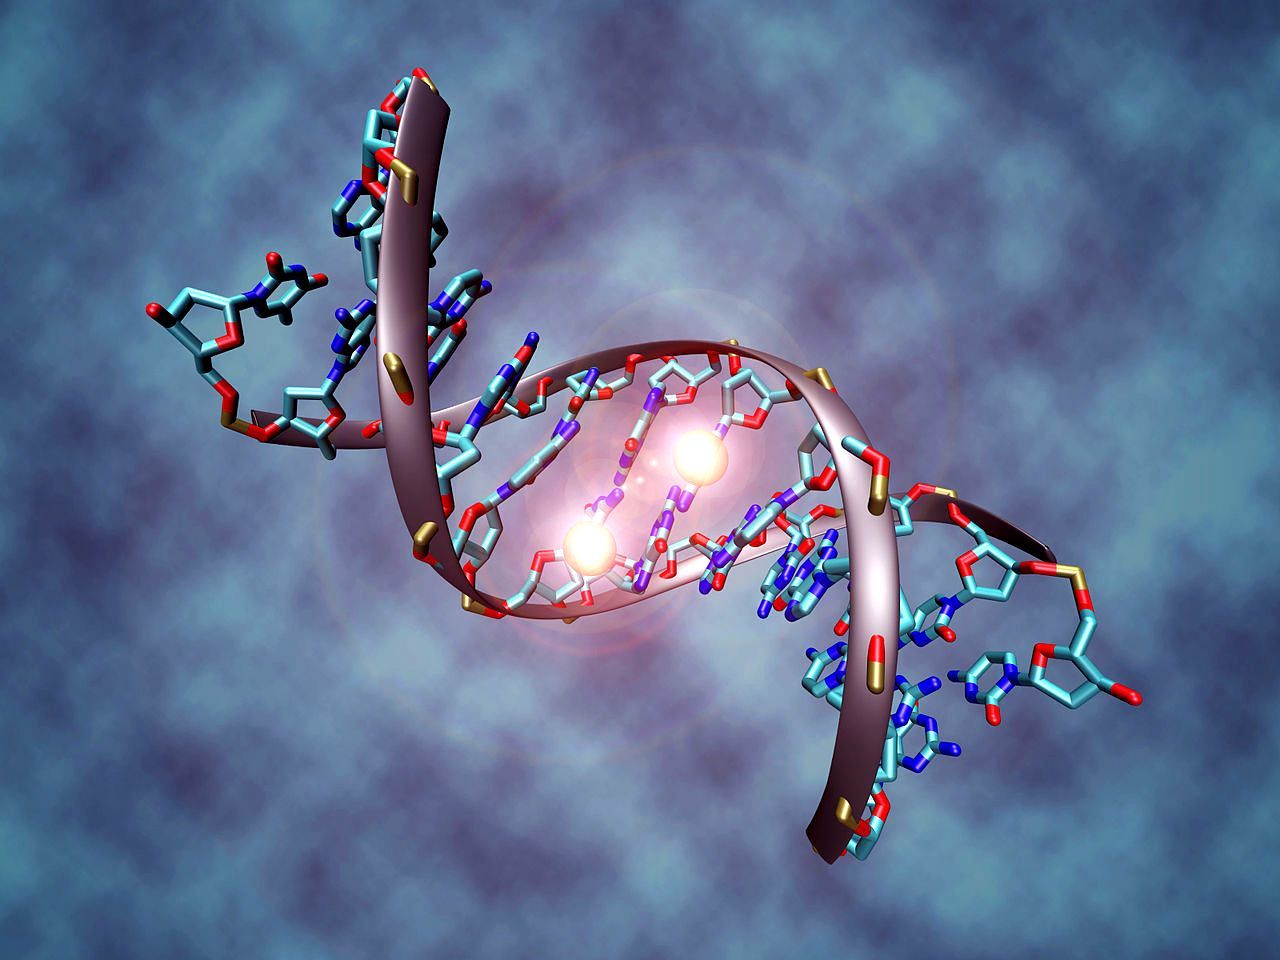 26 najčudnijih činjenica o DNK i genima za koje nikada niste čuli 4